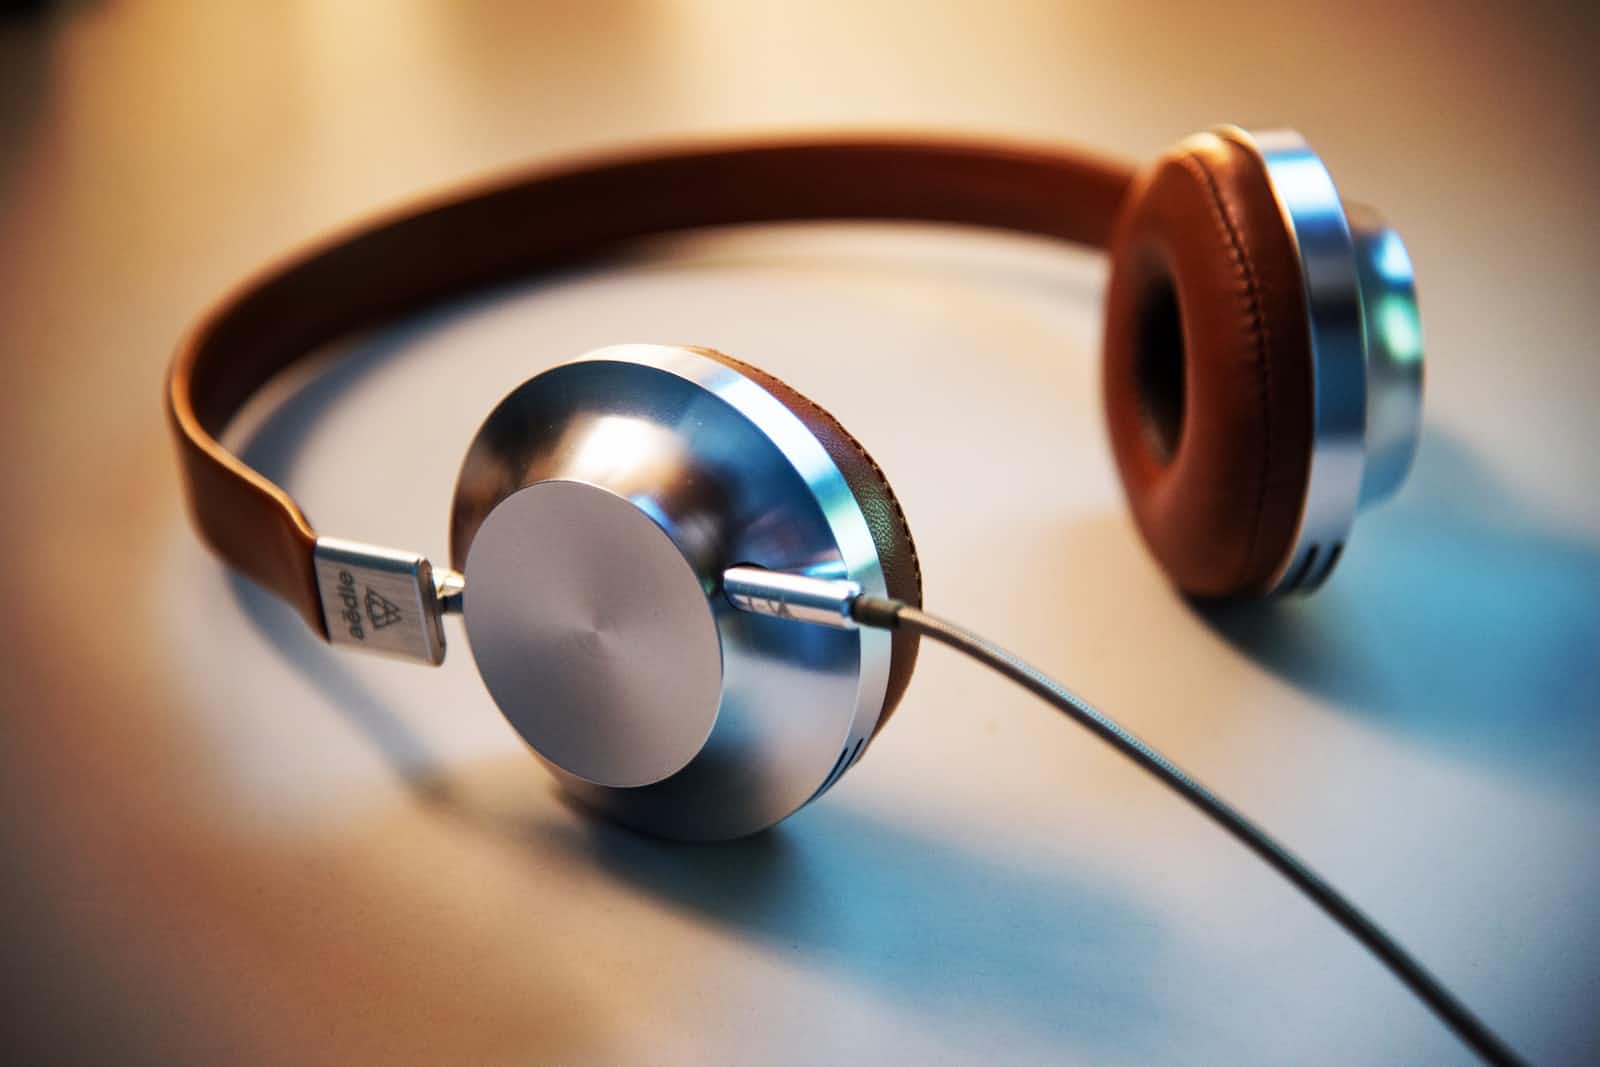 Metallic over-ear headphones